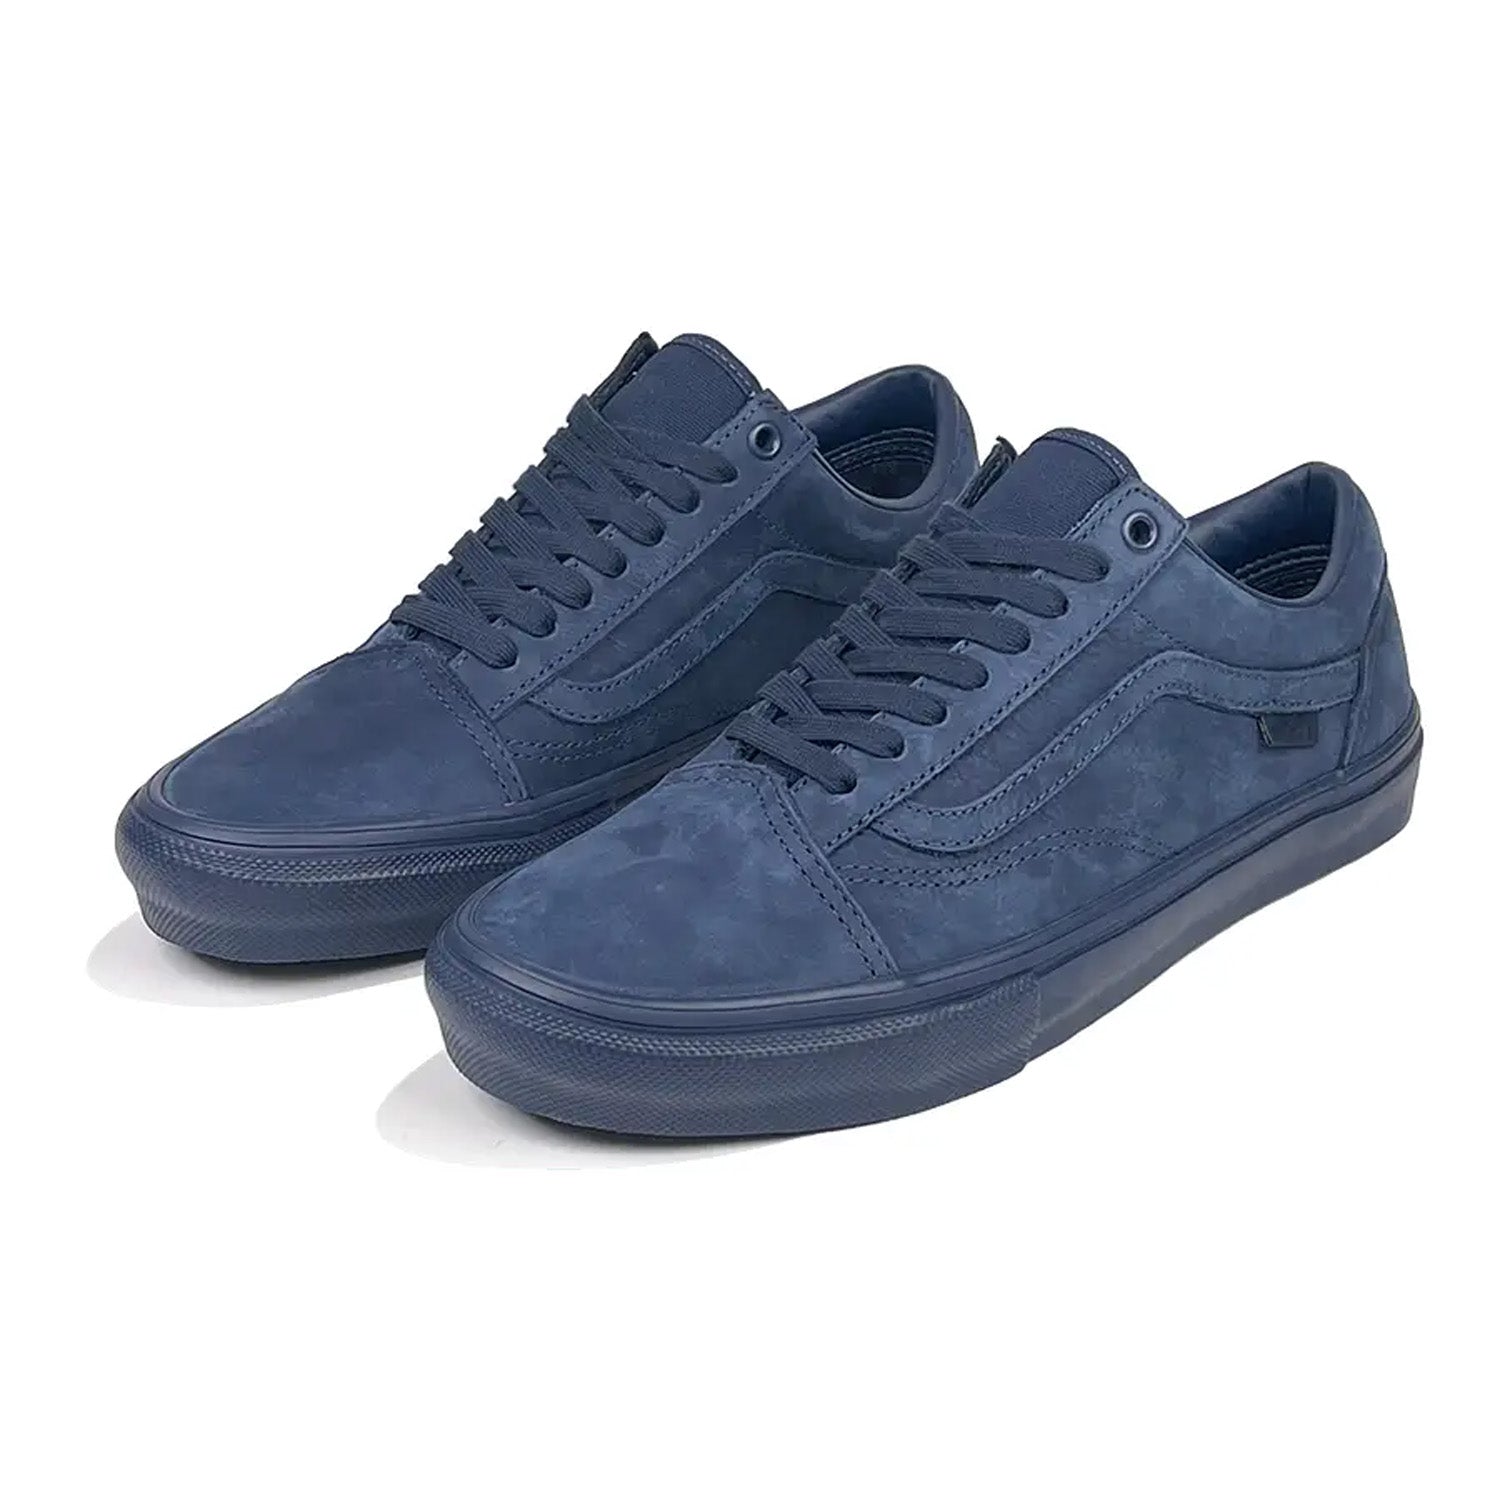 Blue Vans Skate Shoes Flash Sales | bellvalefarms.com